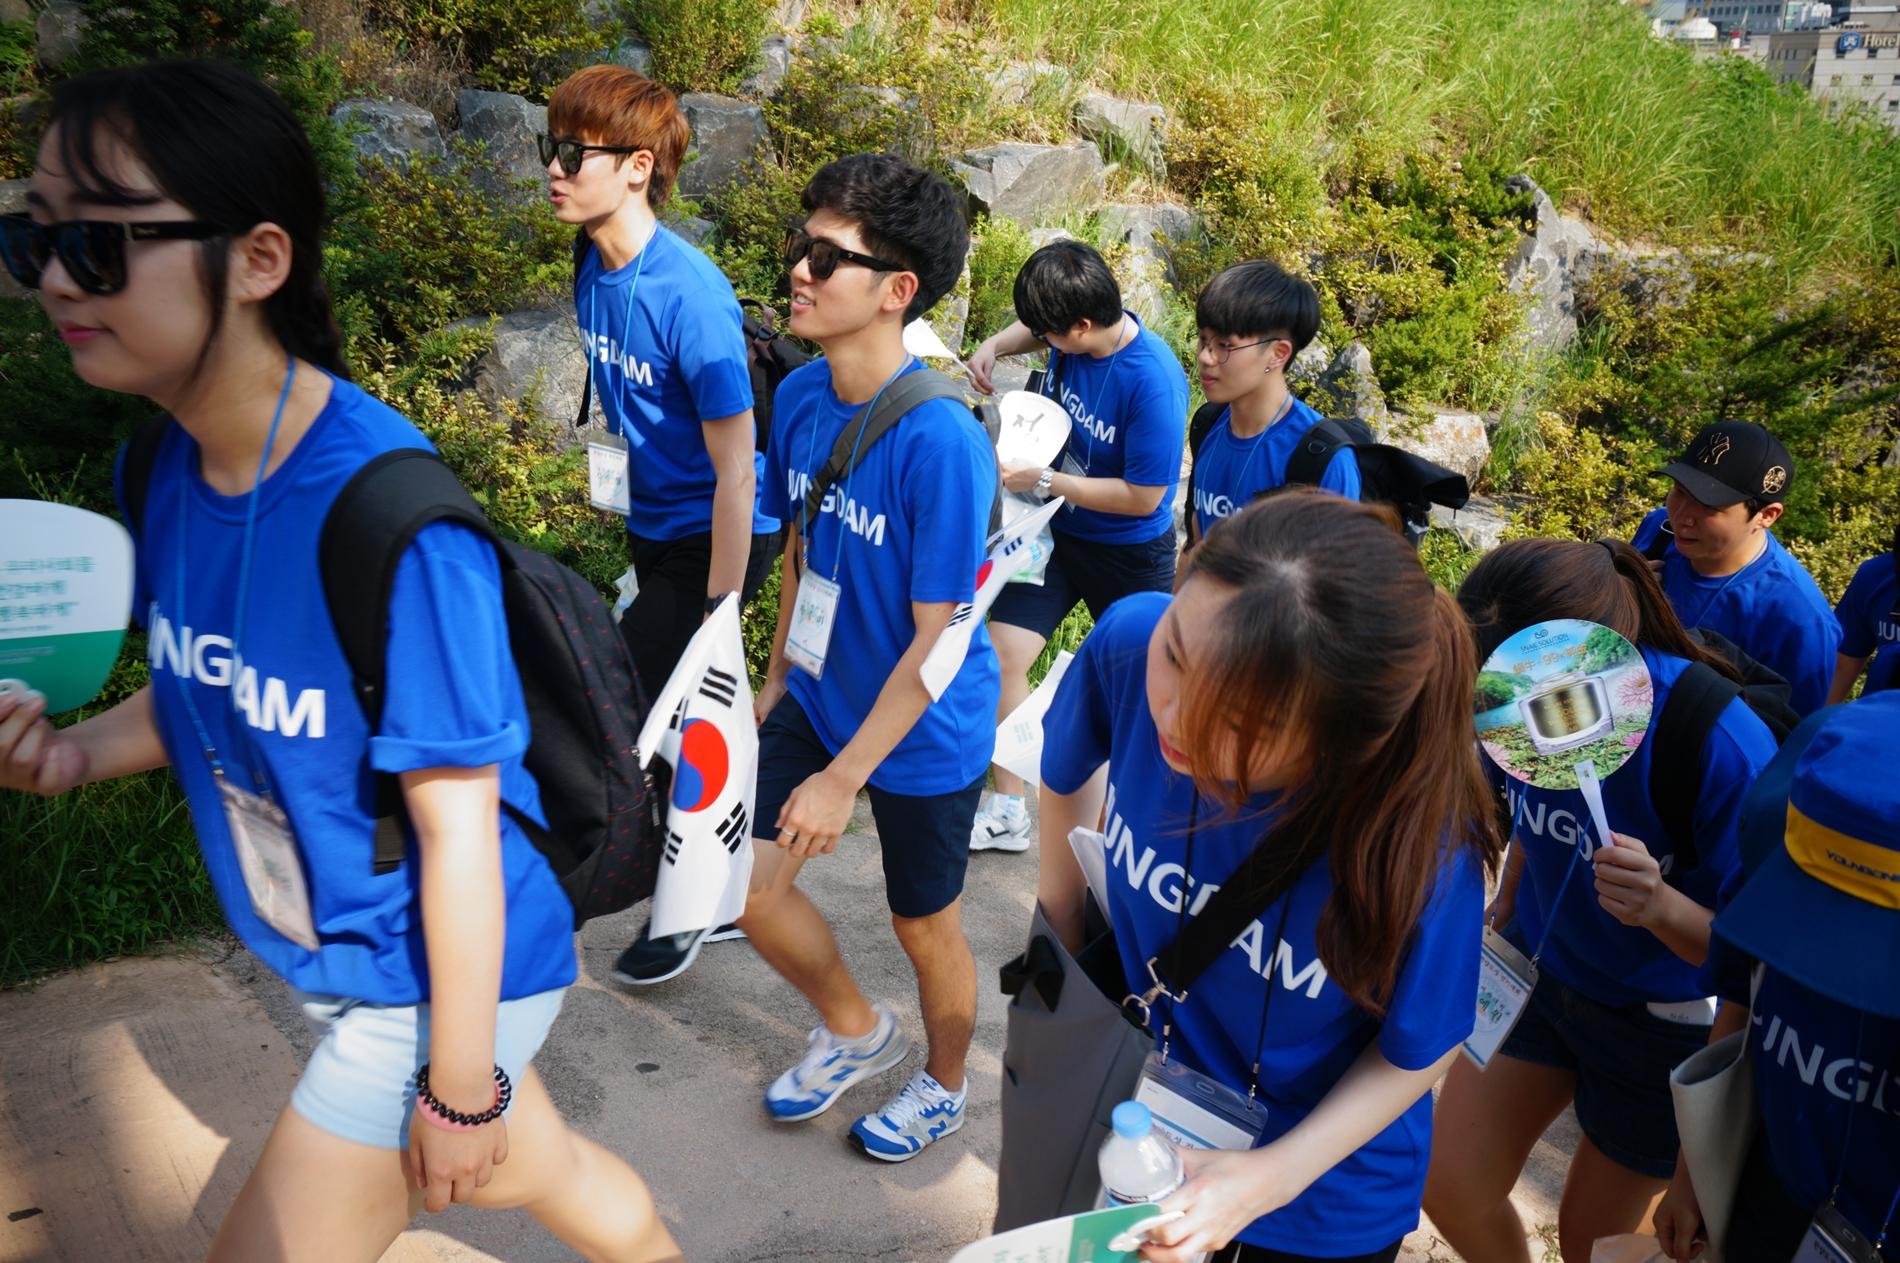 아산장학생은 나눔문화 확산을 위해 8.13일과 14일 한양도성 걷기 행사를 개최했습니다.10